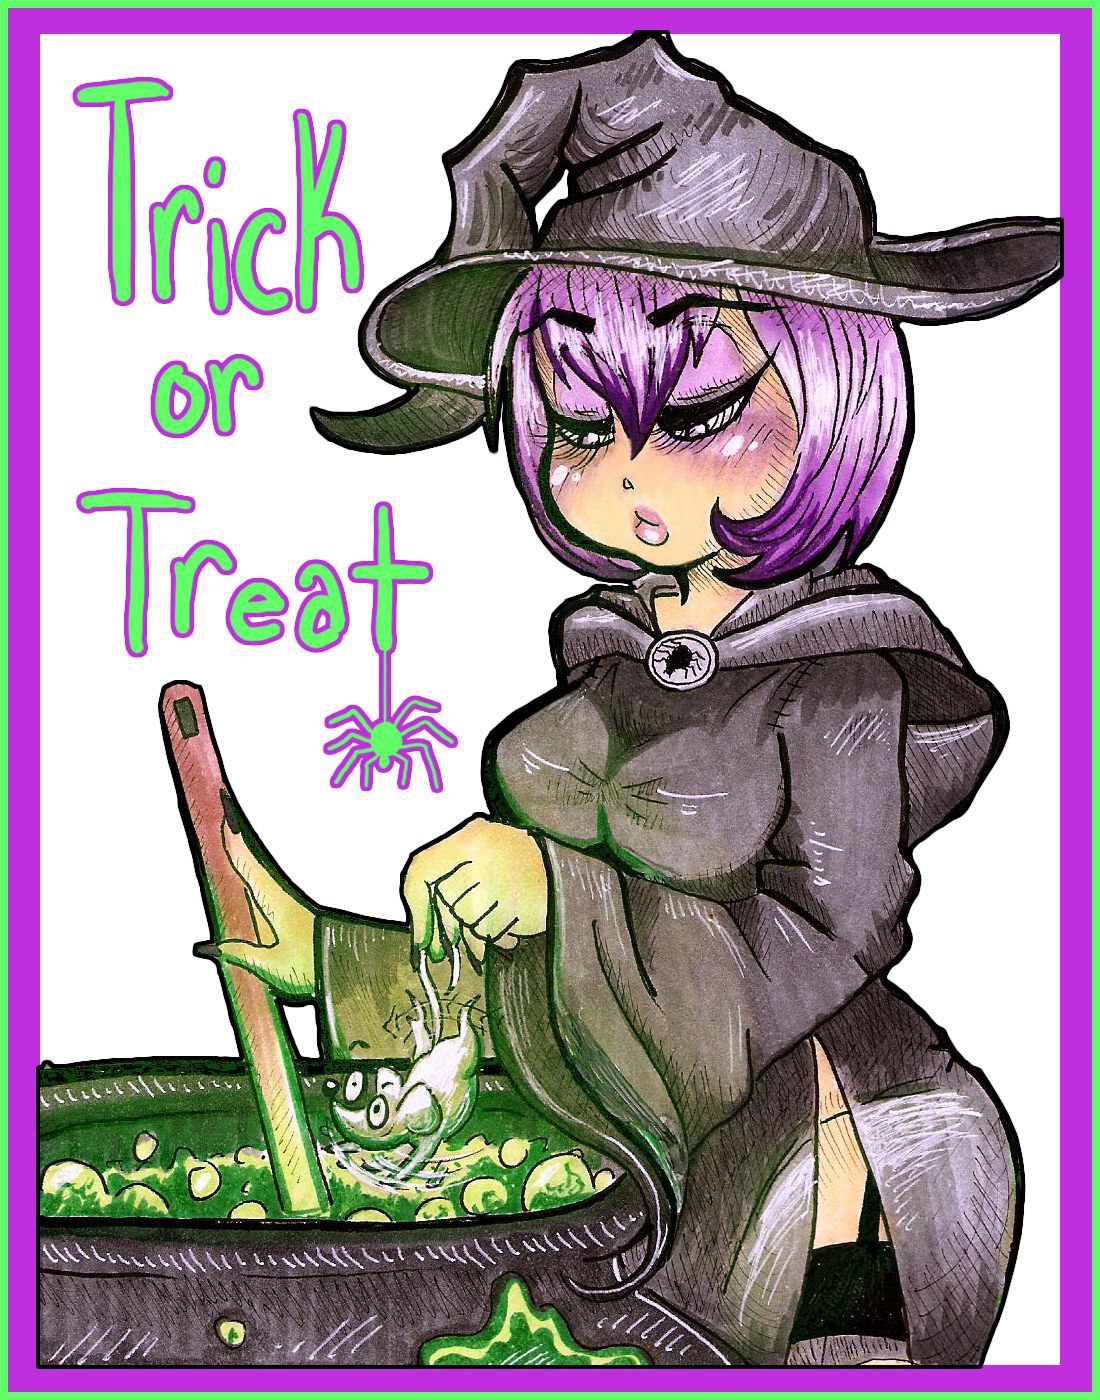 Trick or Treat by artist: Drellen (in progress) 1